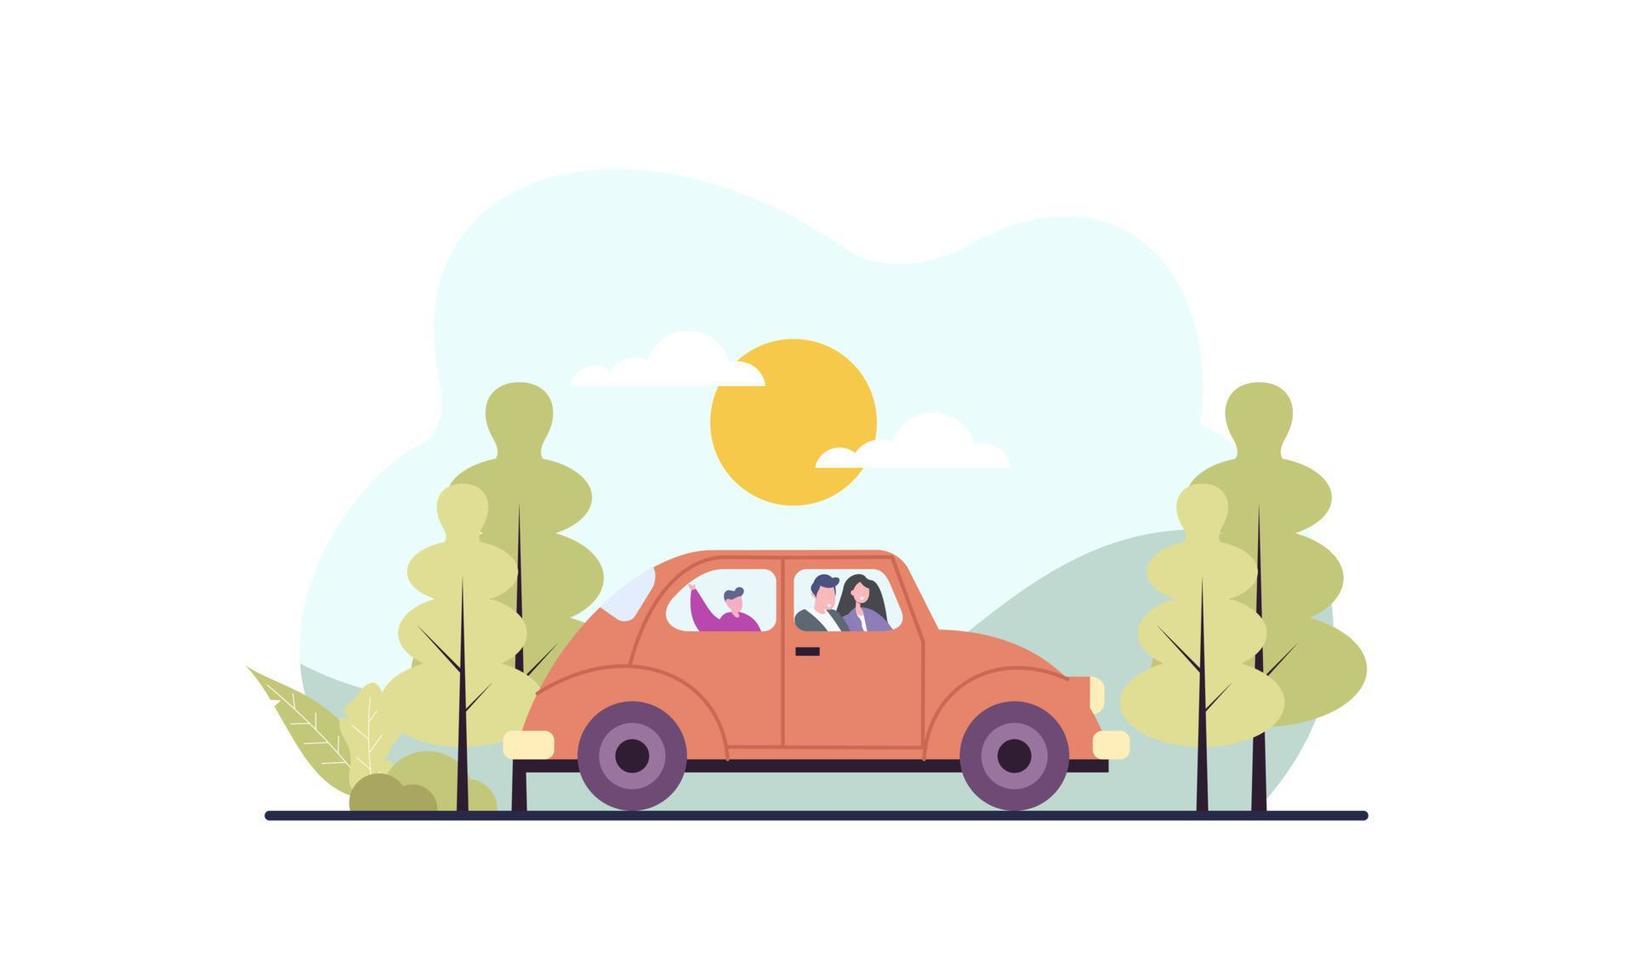 familia feliz viajando en coche ilustración. viaje, viaje por carretera, concepto de transporte vector